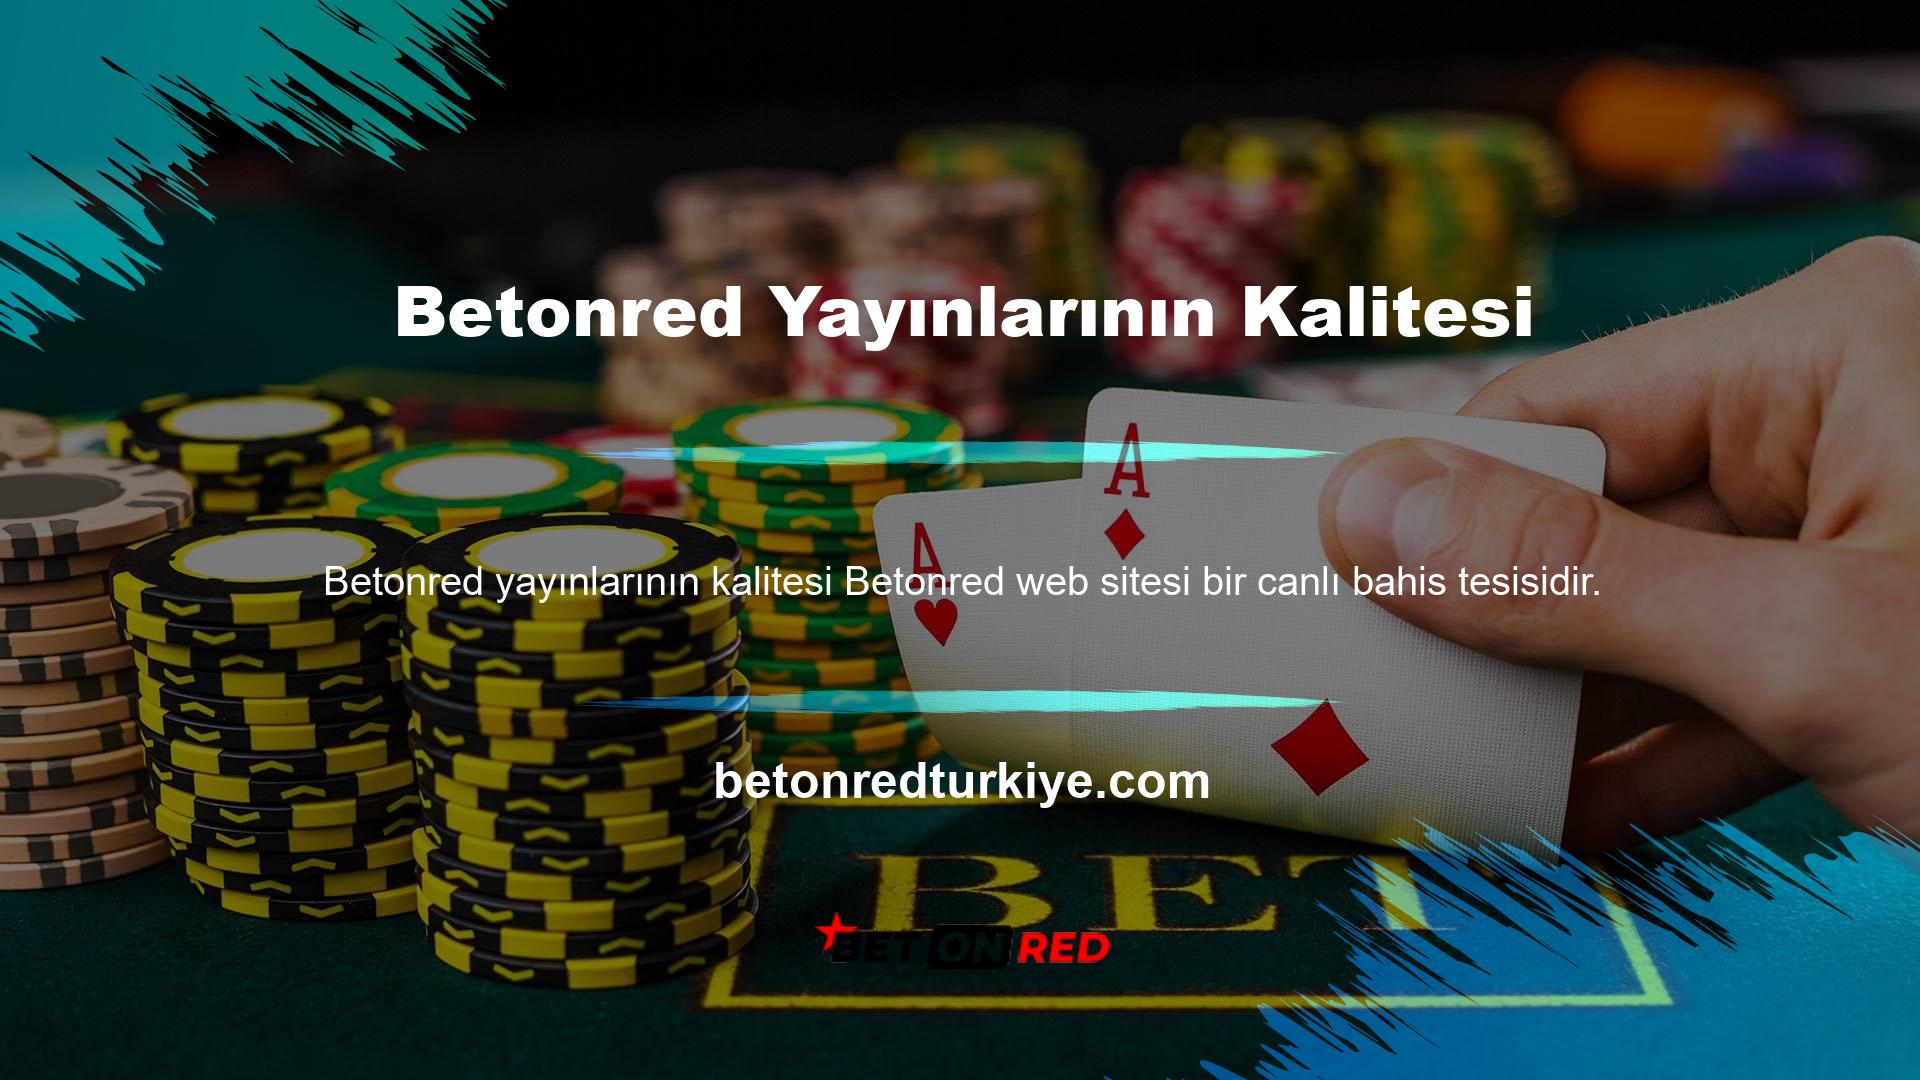 Türkiye'nin en popüler canlı oyun sitelerinden biri